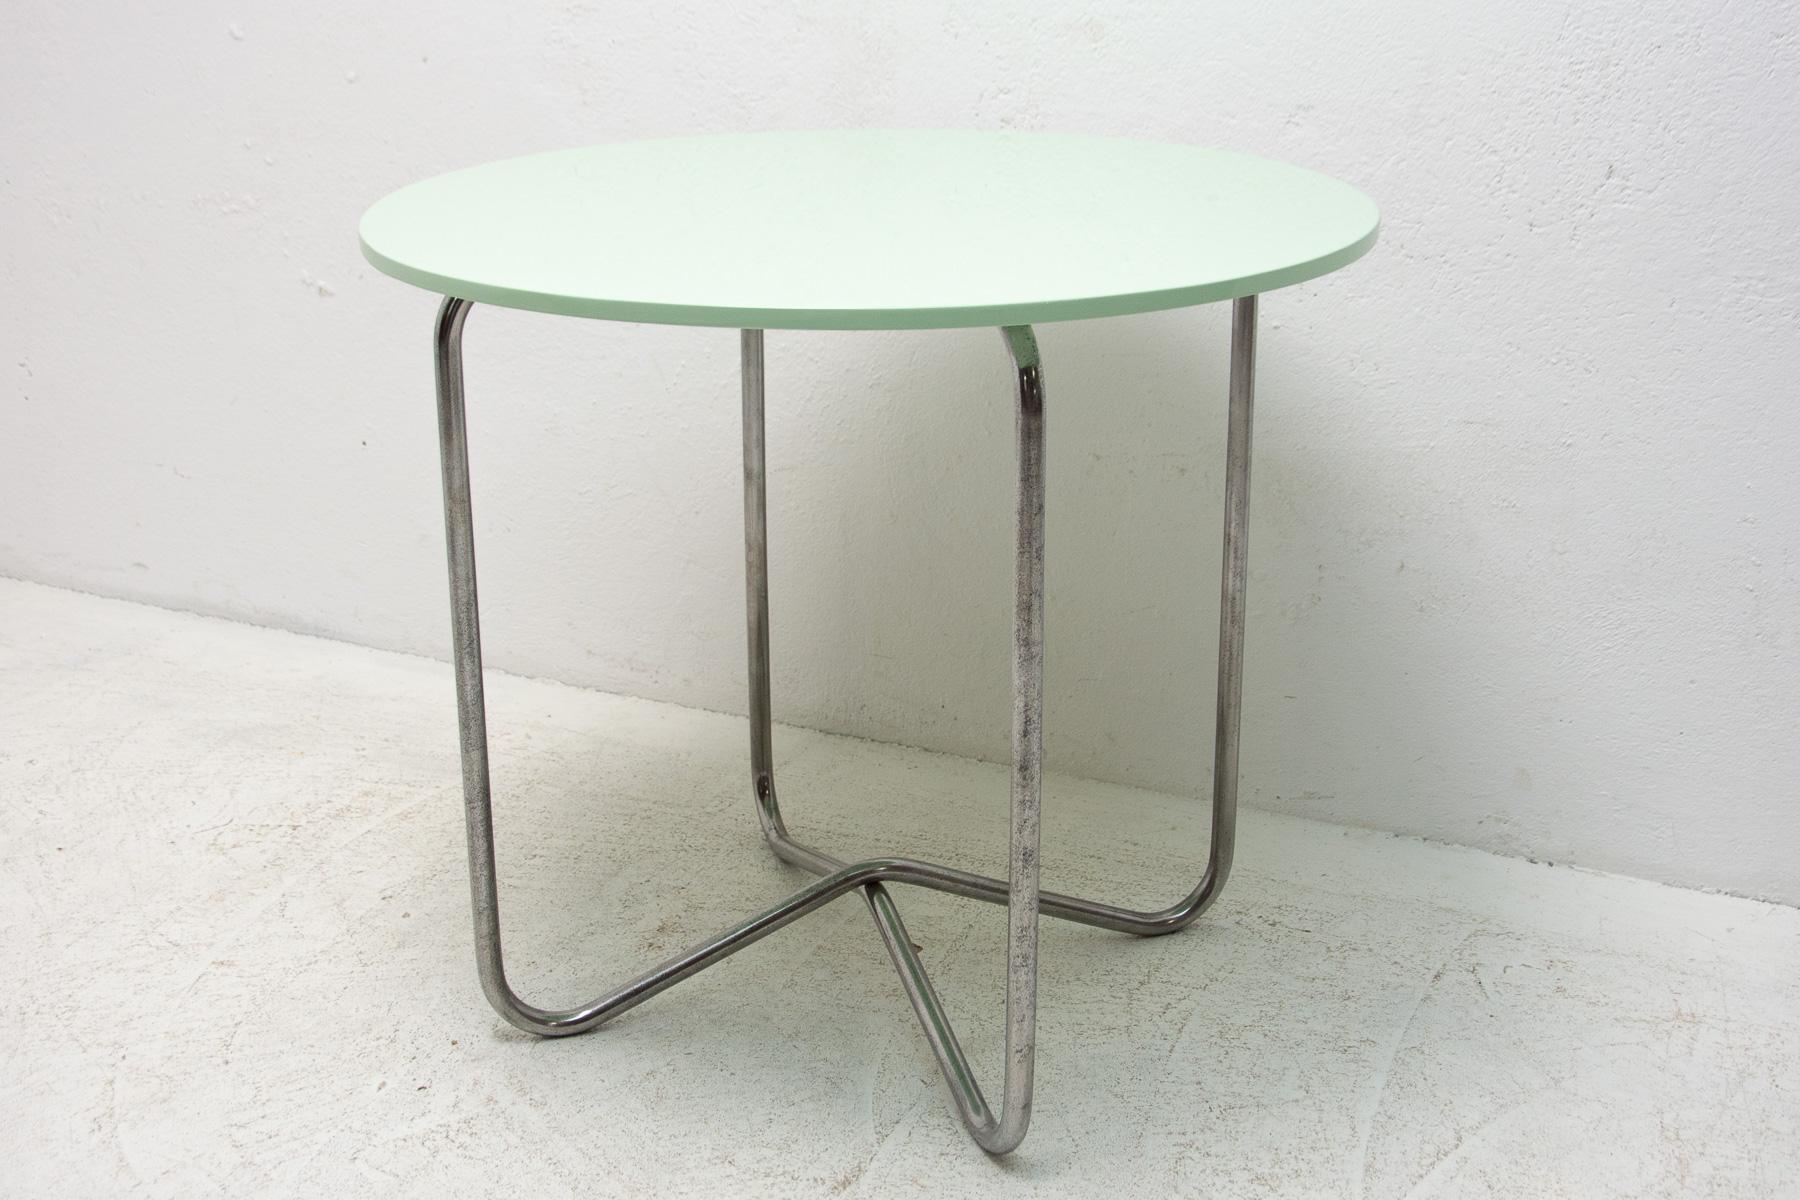 Cette table basse a été conçue par Hynek Gottwald et fabriquée dans l'ancienne Tchécoslovaquie dans les années 1930.

Entièrement rénové, la partie chromée a été nettoyée et frottée, le plateau a été peint en haute brillance avec du polyuréthane